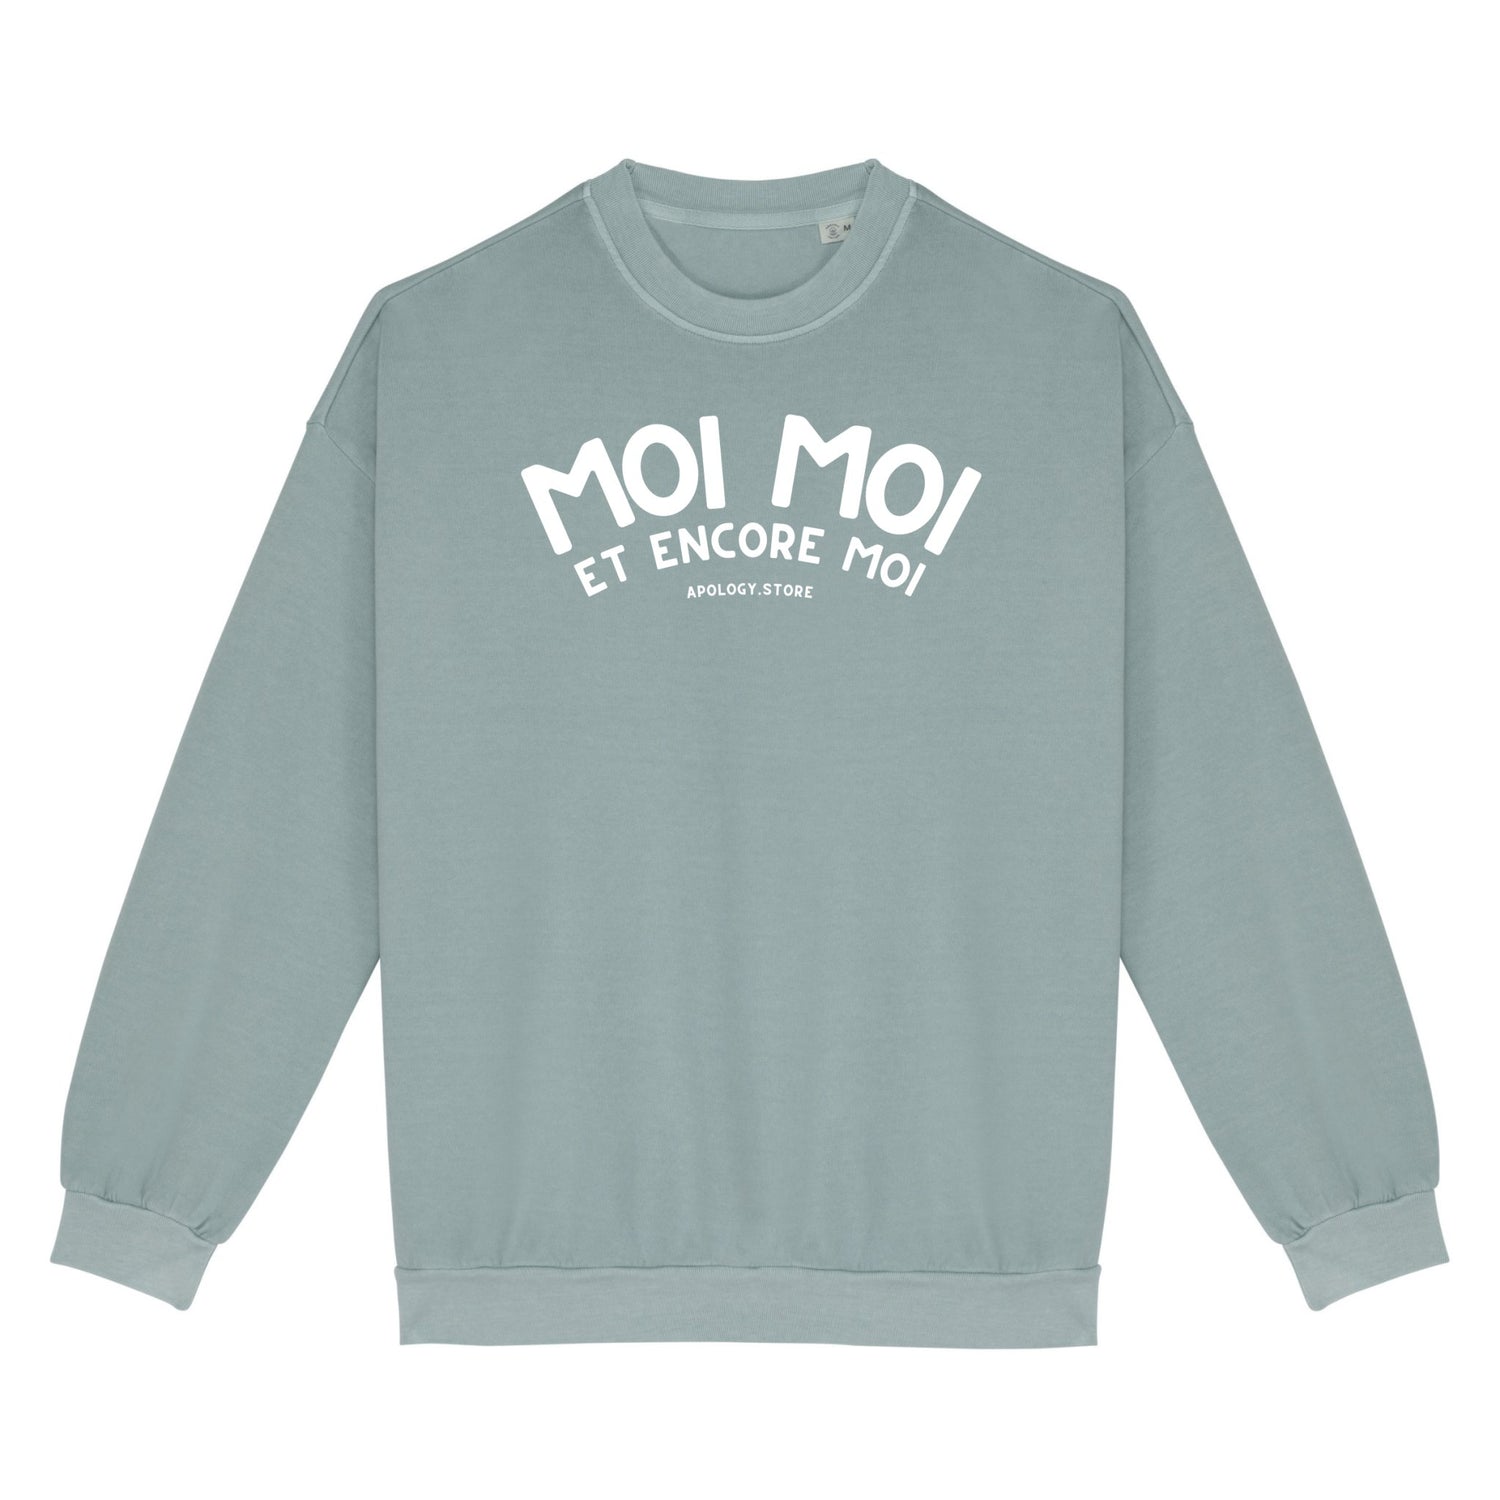 Sweat-shirt Moi Moi Et Moi Encore - Fabriqué au Portugal XS Vert_jade - Imprimé en France